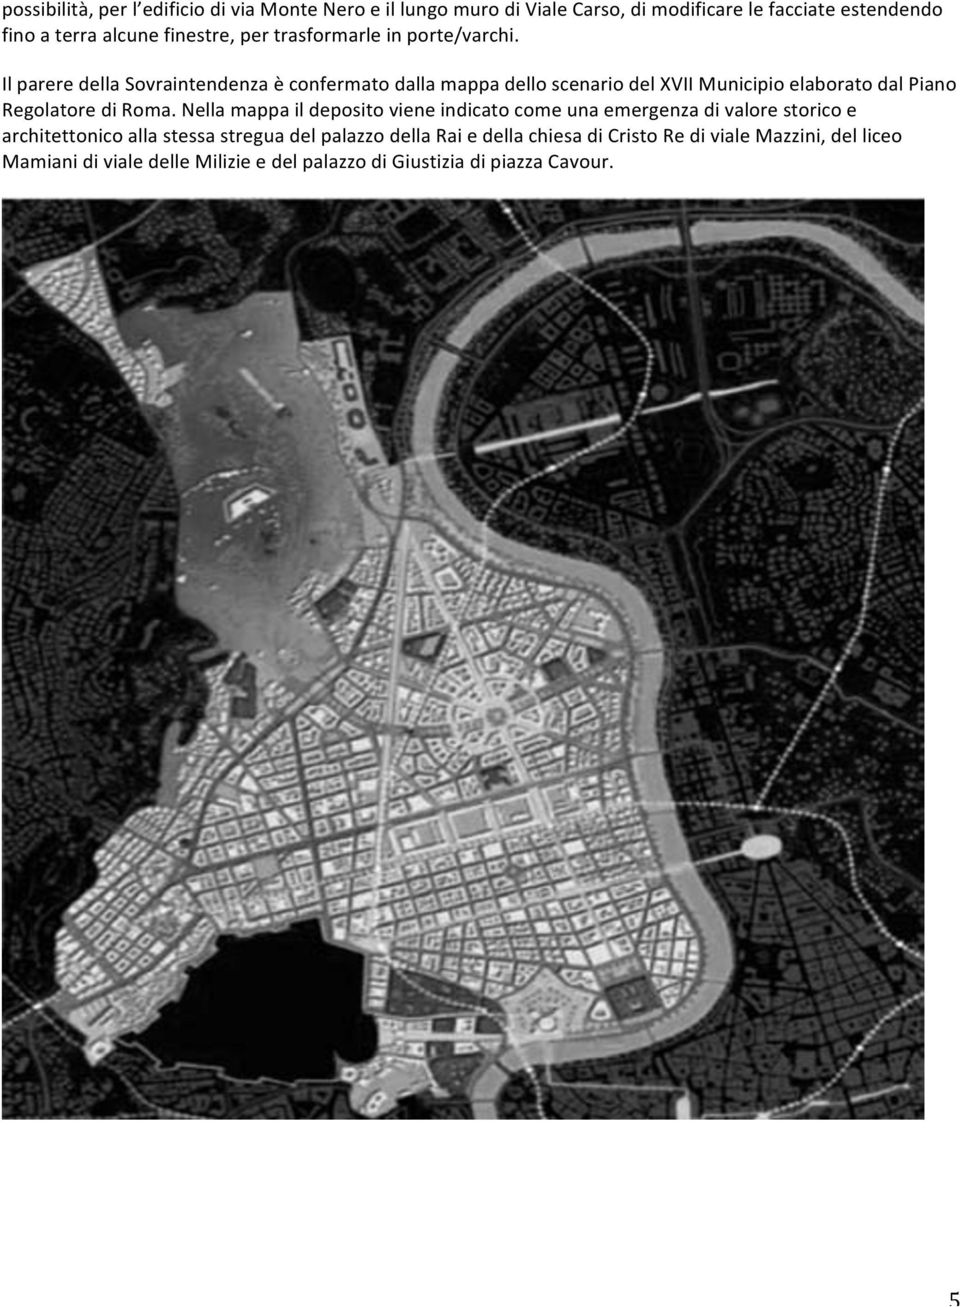 Il parere della Sovraintendenza è confermato dalla mappa dello scenario del XVII Municipio elaborato dal Piano Regolatore di Roma.